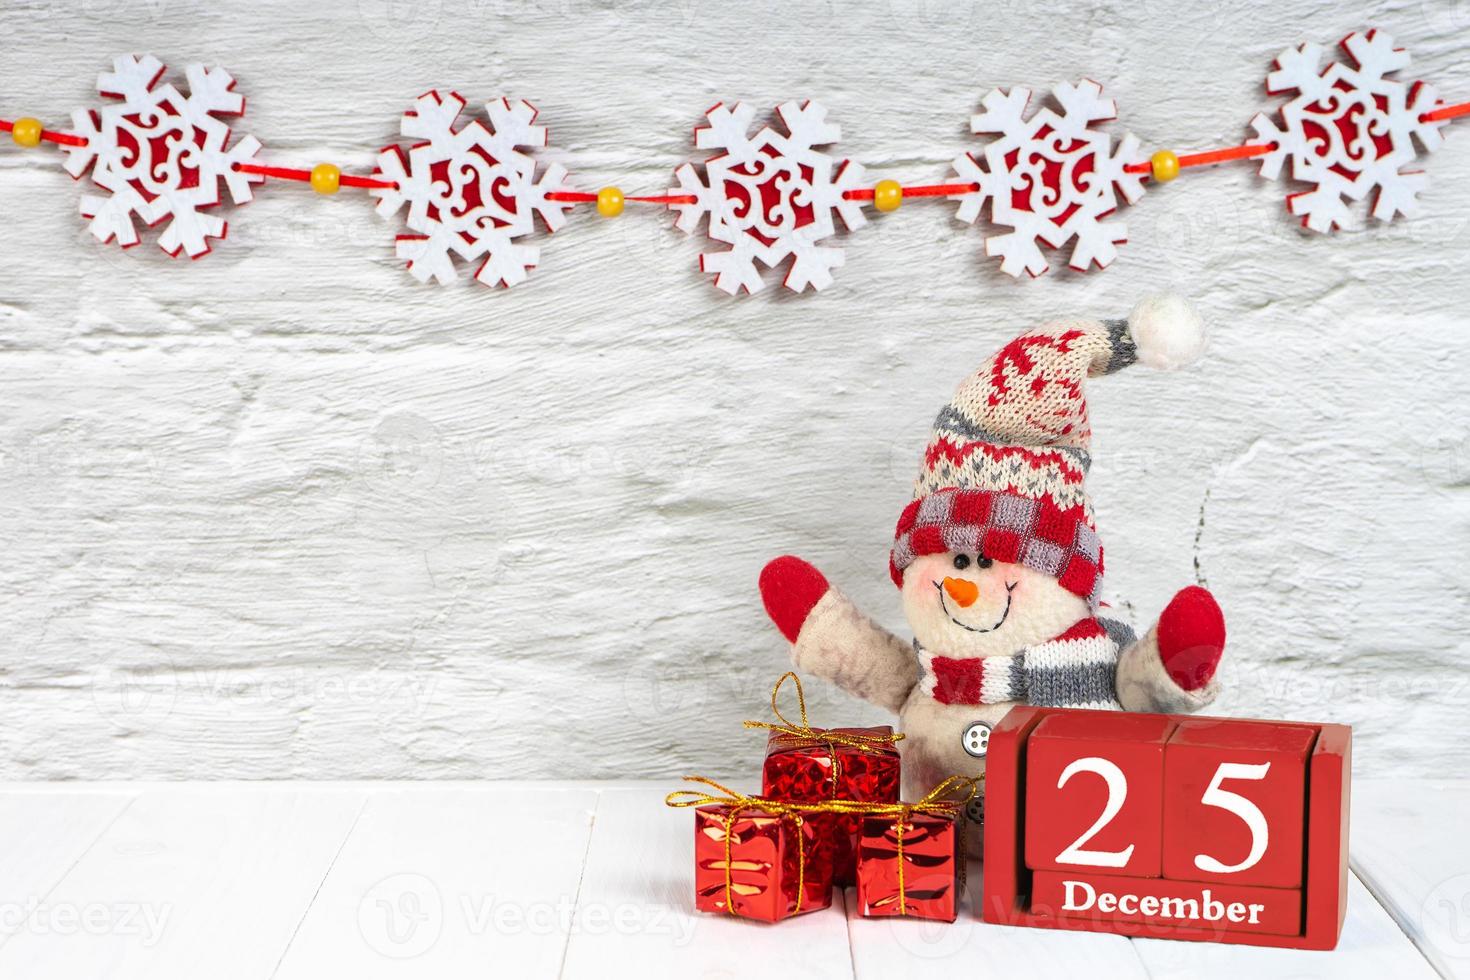 árvore de natal decorativa, caixas de presente e calendário de madeira em fundo branco de madeira. foto